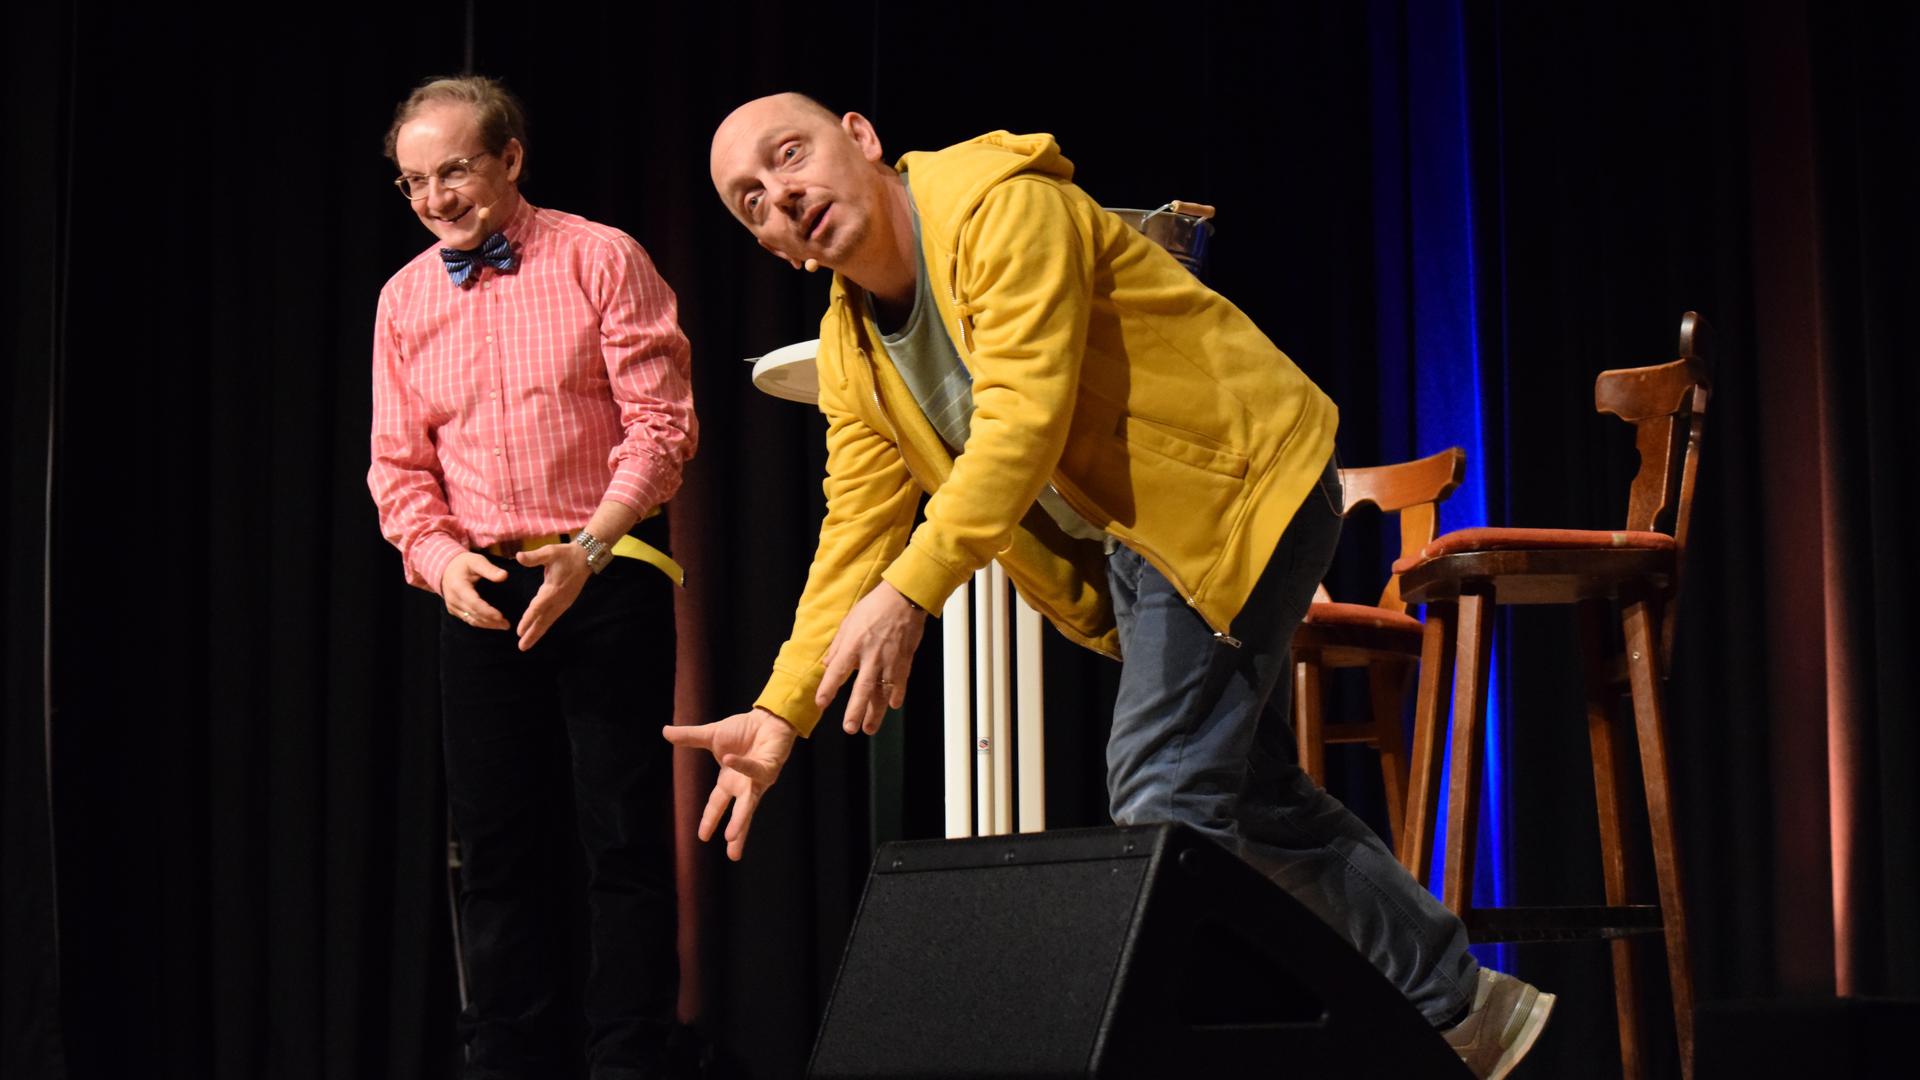 Zwei Comedians stehen auf einer Bühne und gestikulieren.